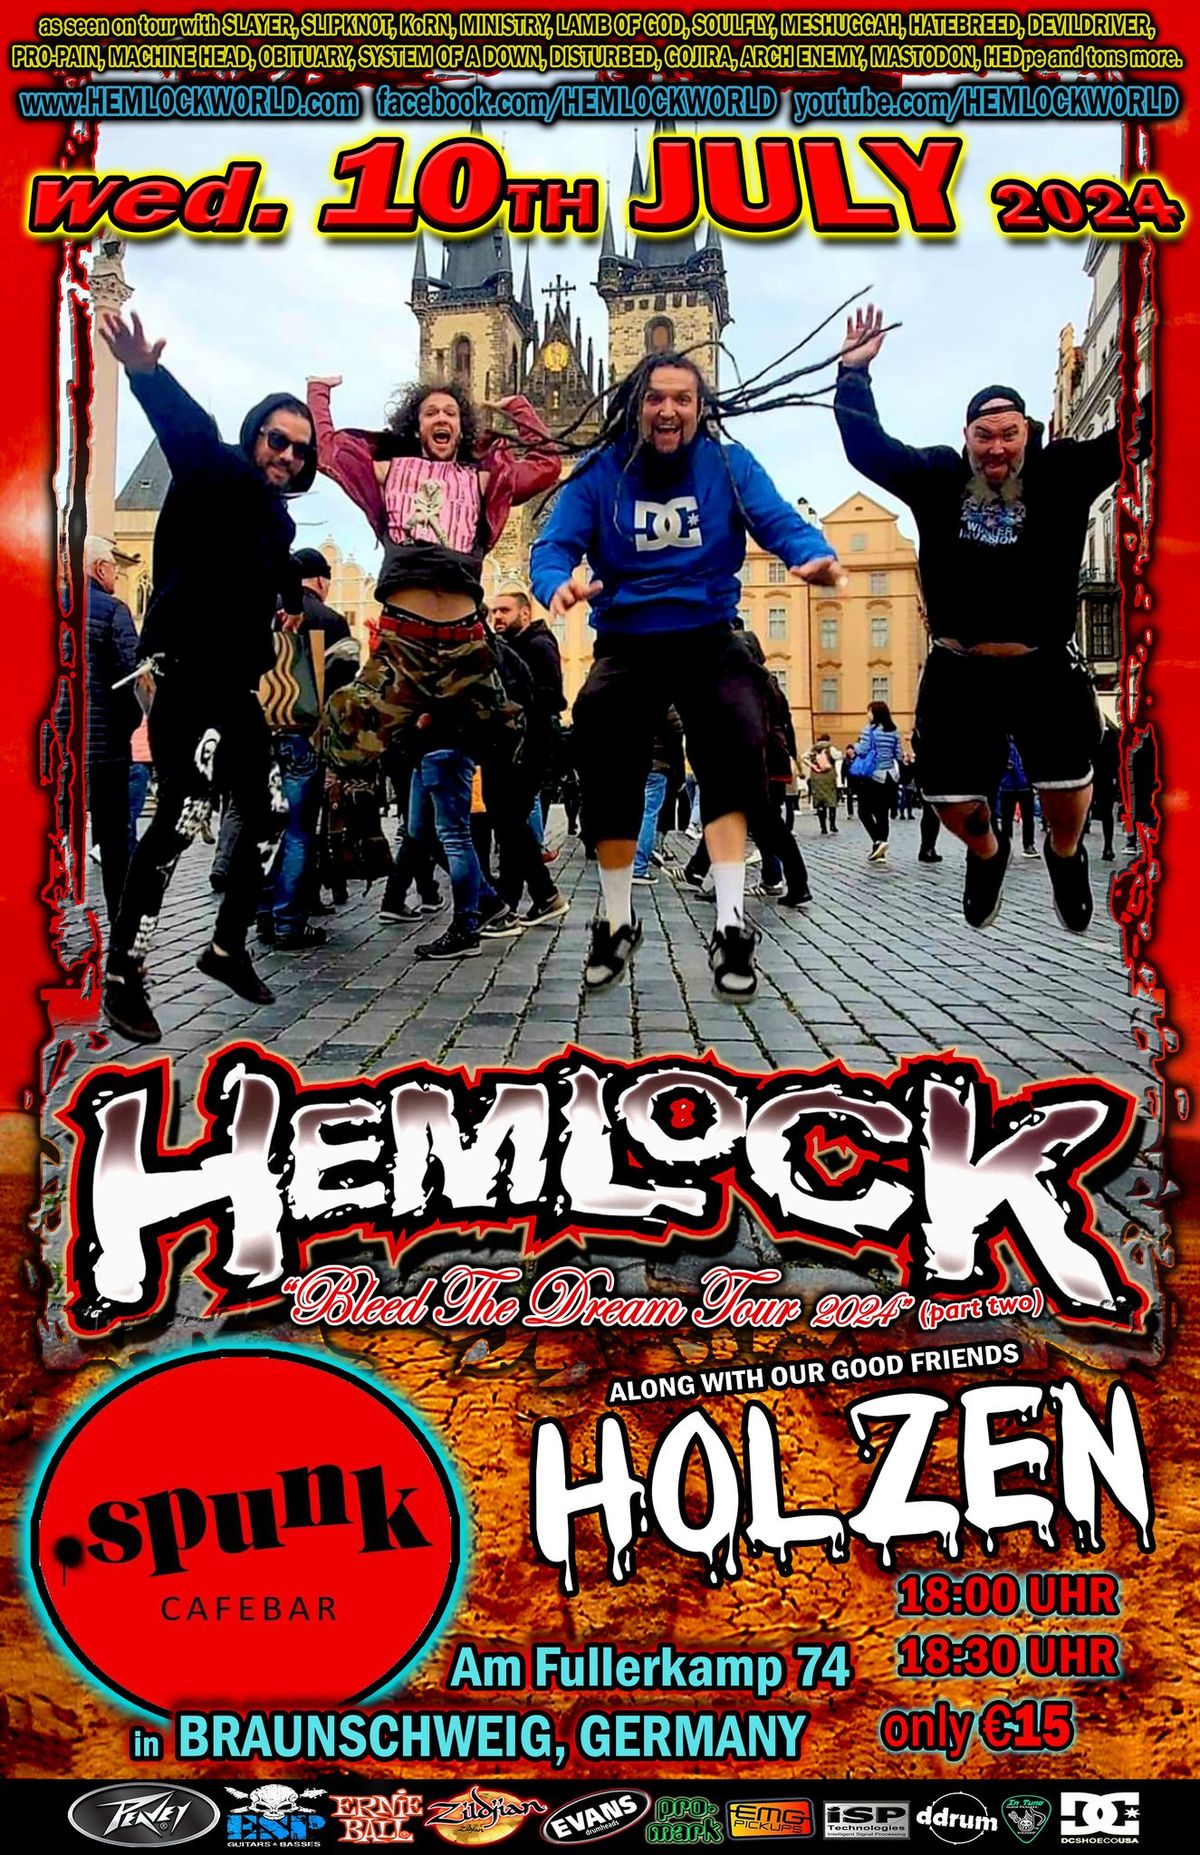 HEMLOCK in Braunschweig GERMANY w\/ our friends HOLZEN